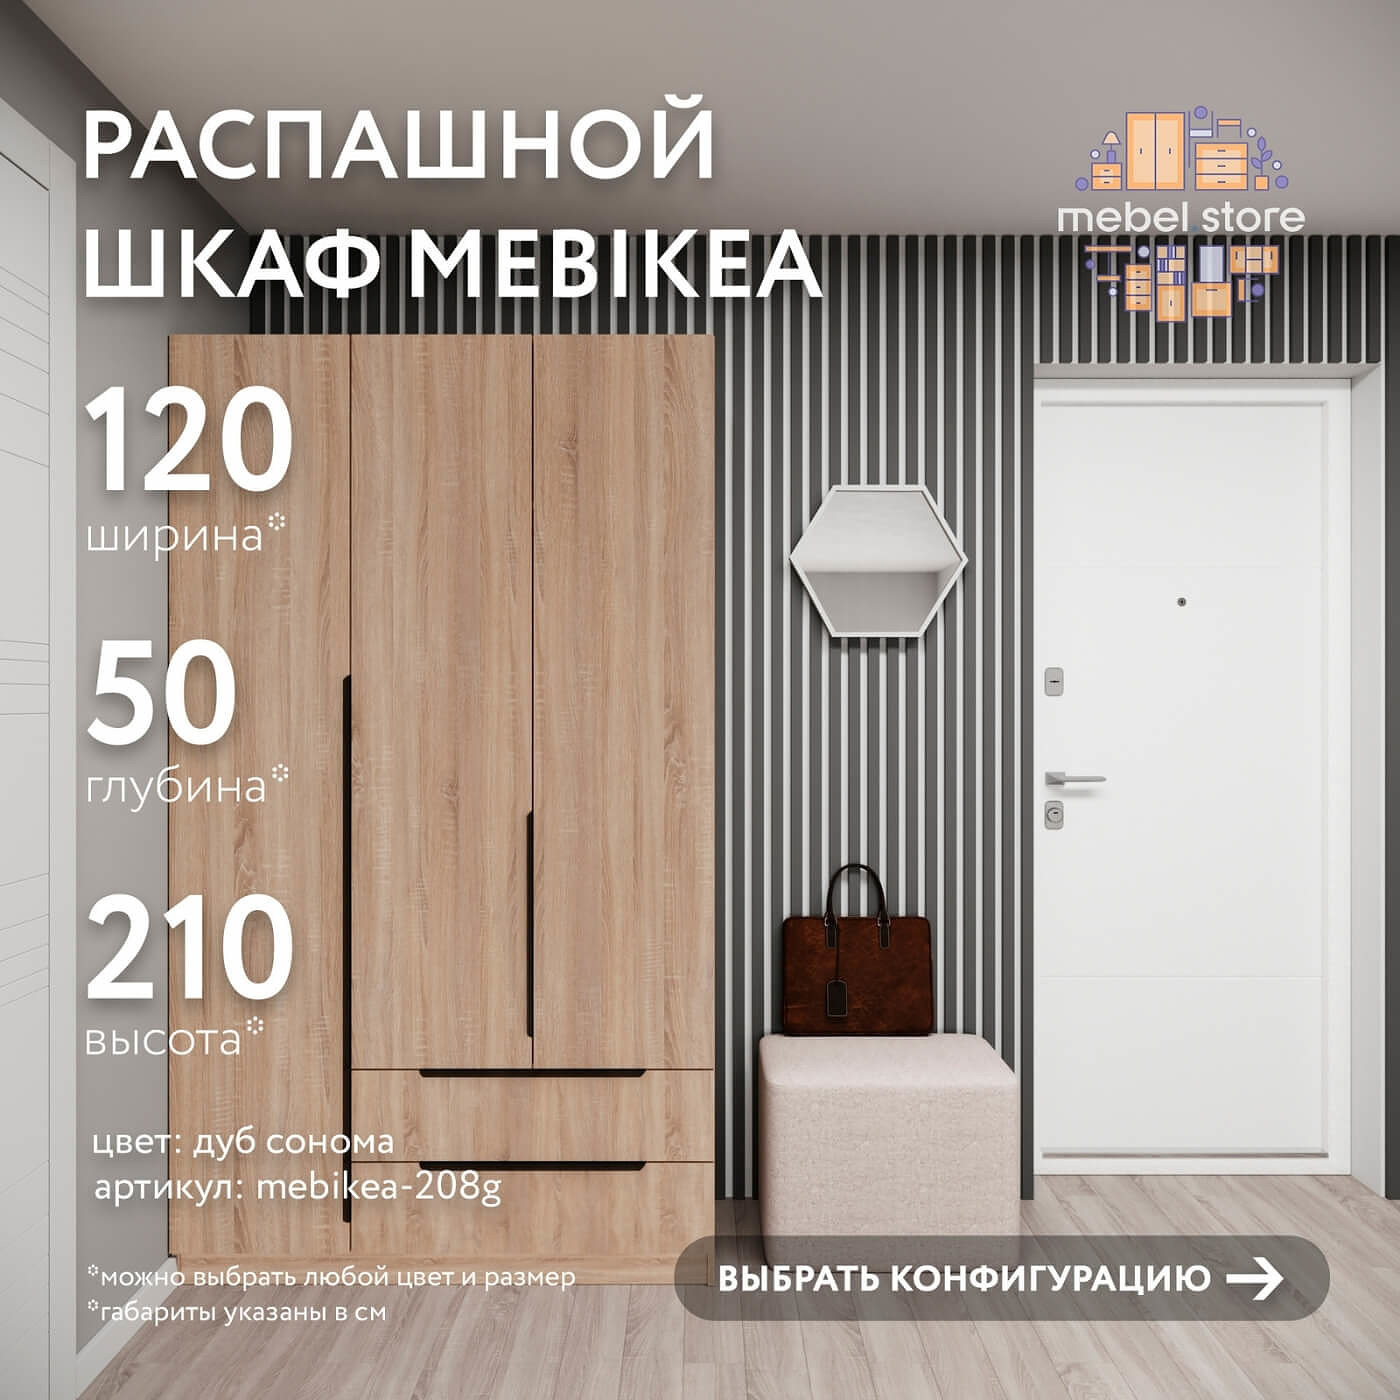 Шкаф Mebikea-208g минимализм для прихожей и спальни - фото 1 large